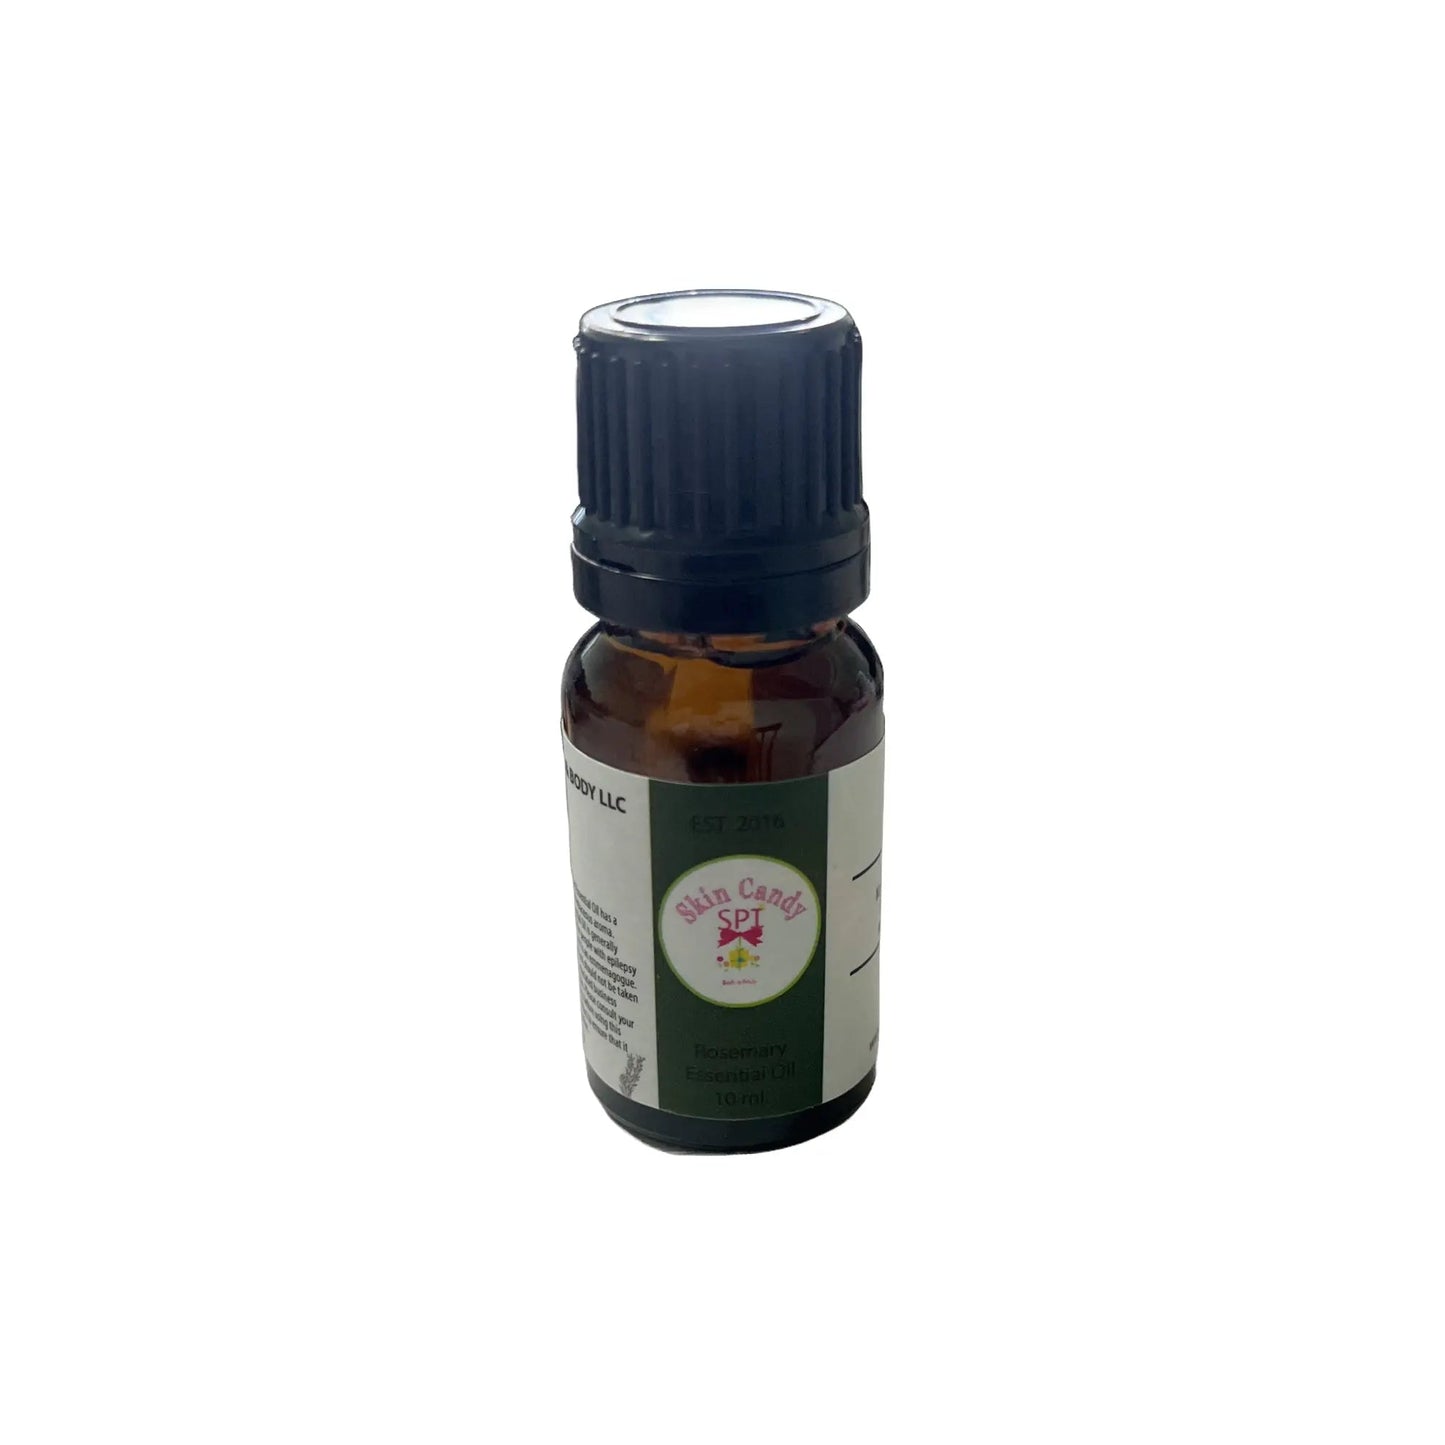 Rosemary Essential Oil 10 ml. - Skin Candy Bath & Body